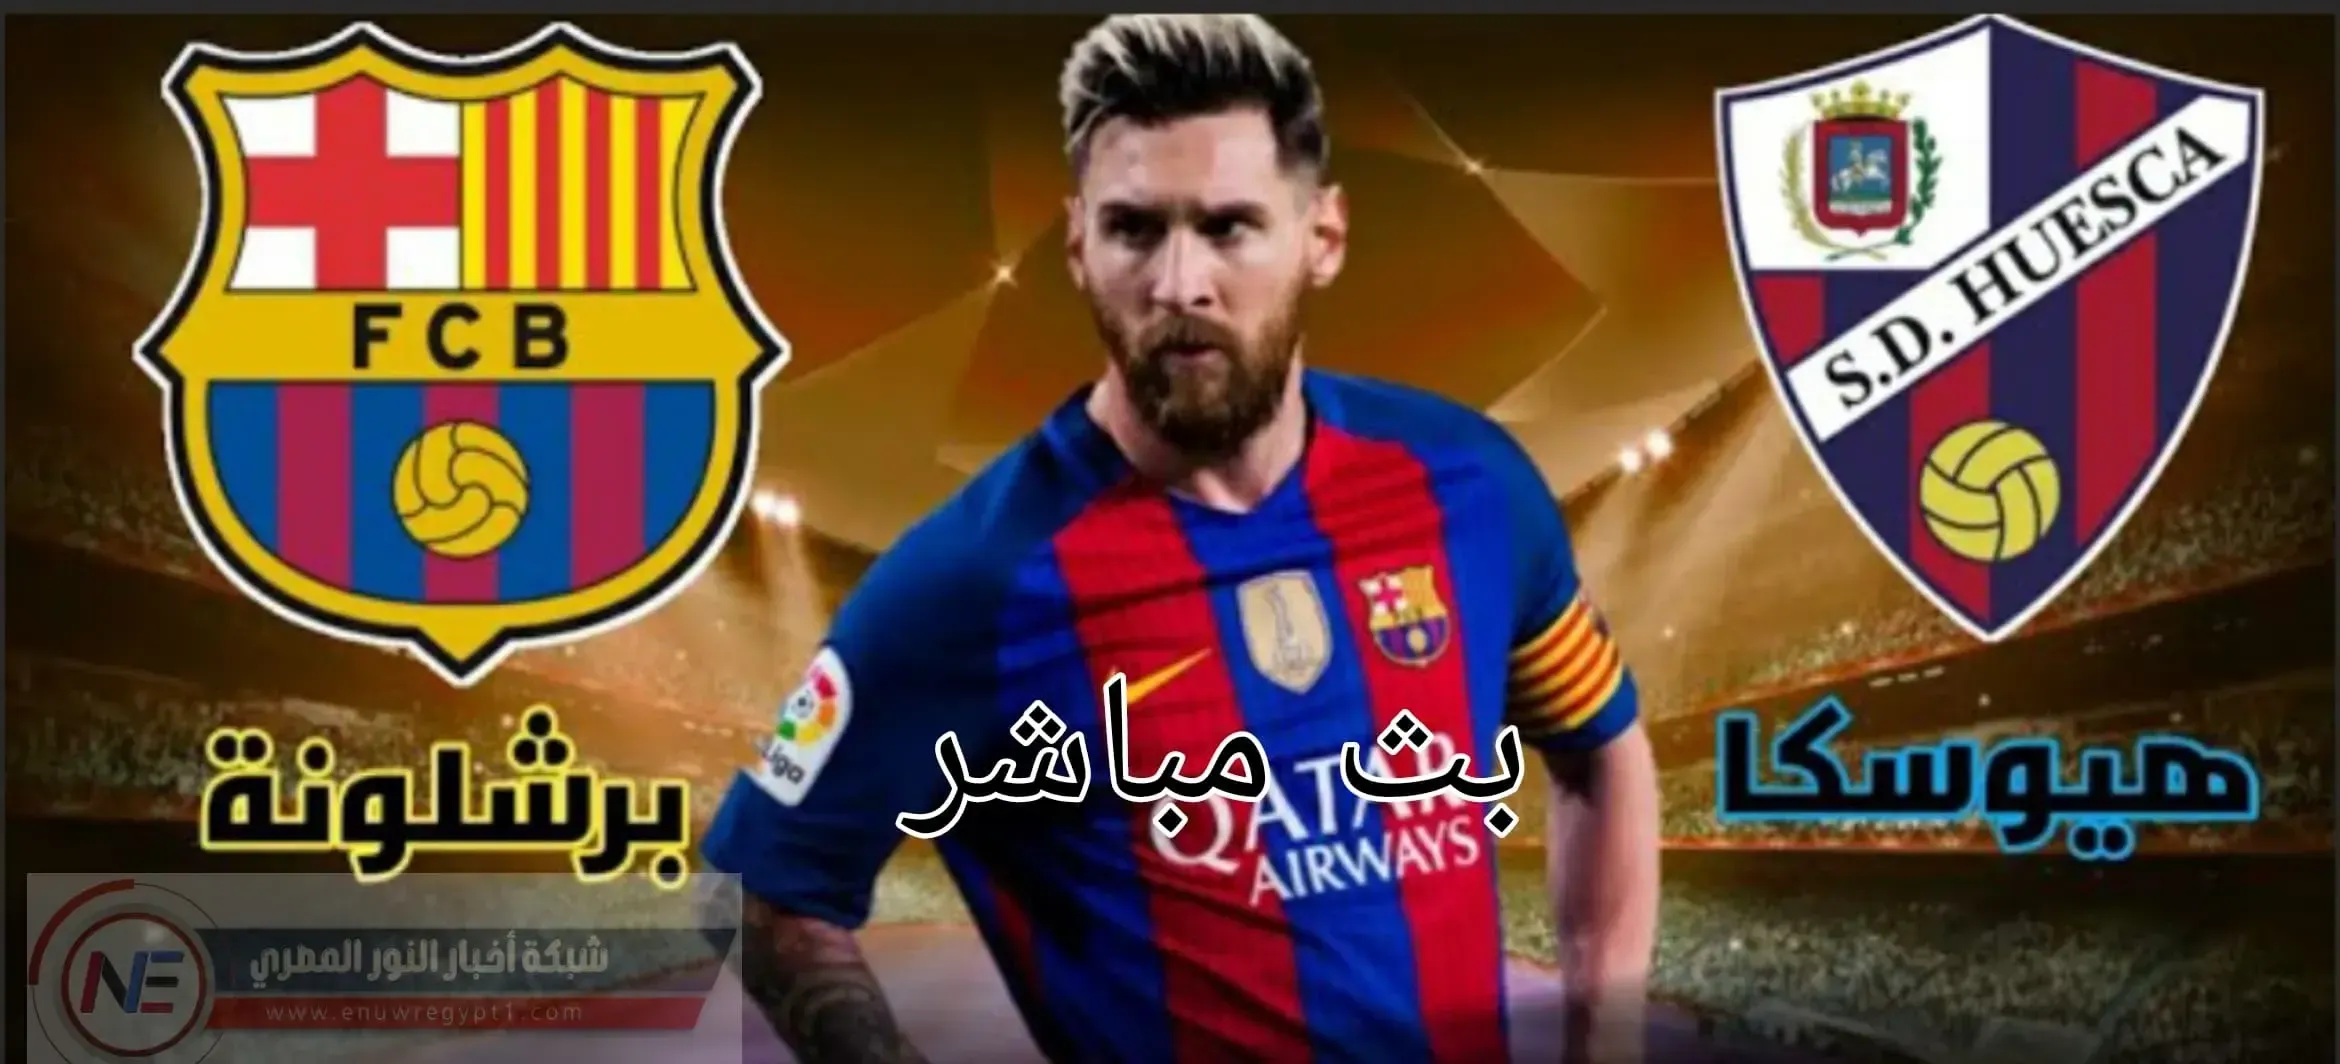 يلا شوت حصري الجديد HD | مشاهدة مباراة برشلونة و هويسكا بث مباشر اليوم 15-03-2021 لايف الدورى الاسباني بجوده عالية بدون اي تقطيع بتعليق صوتي عربي